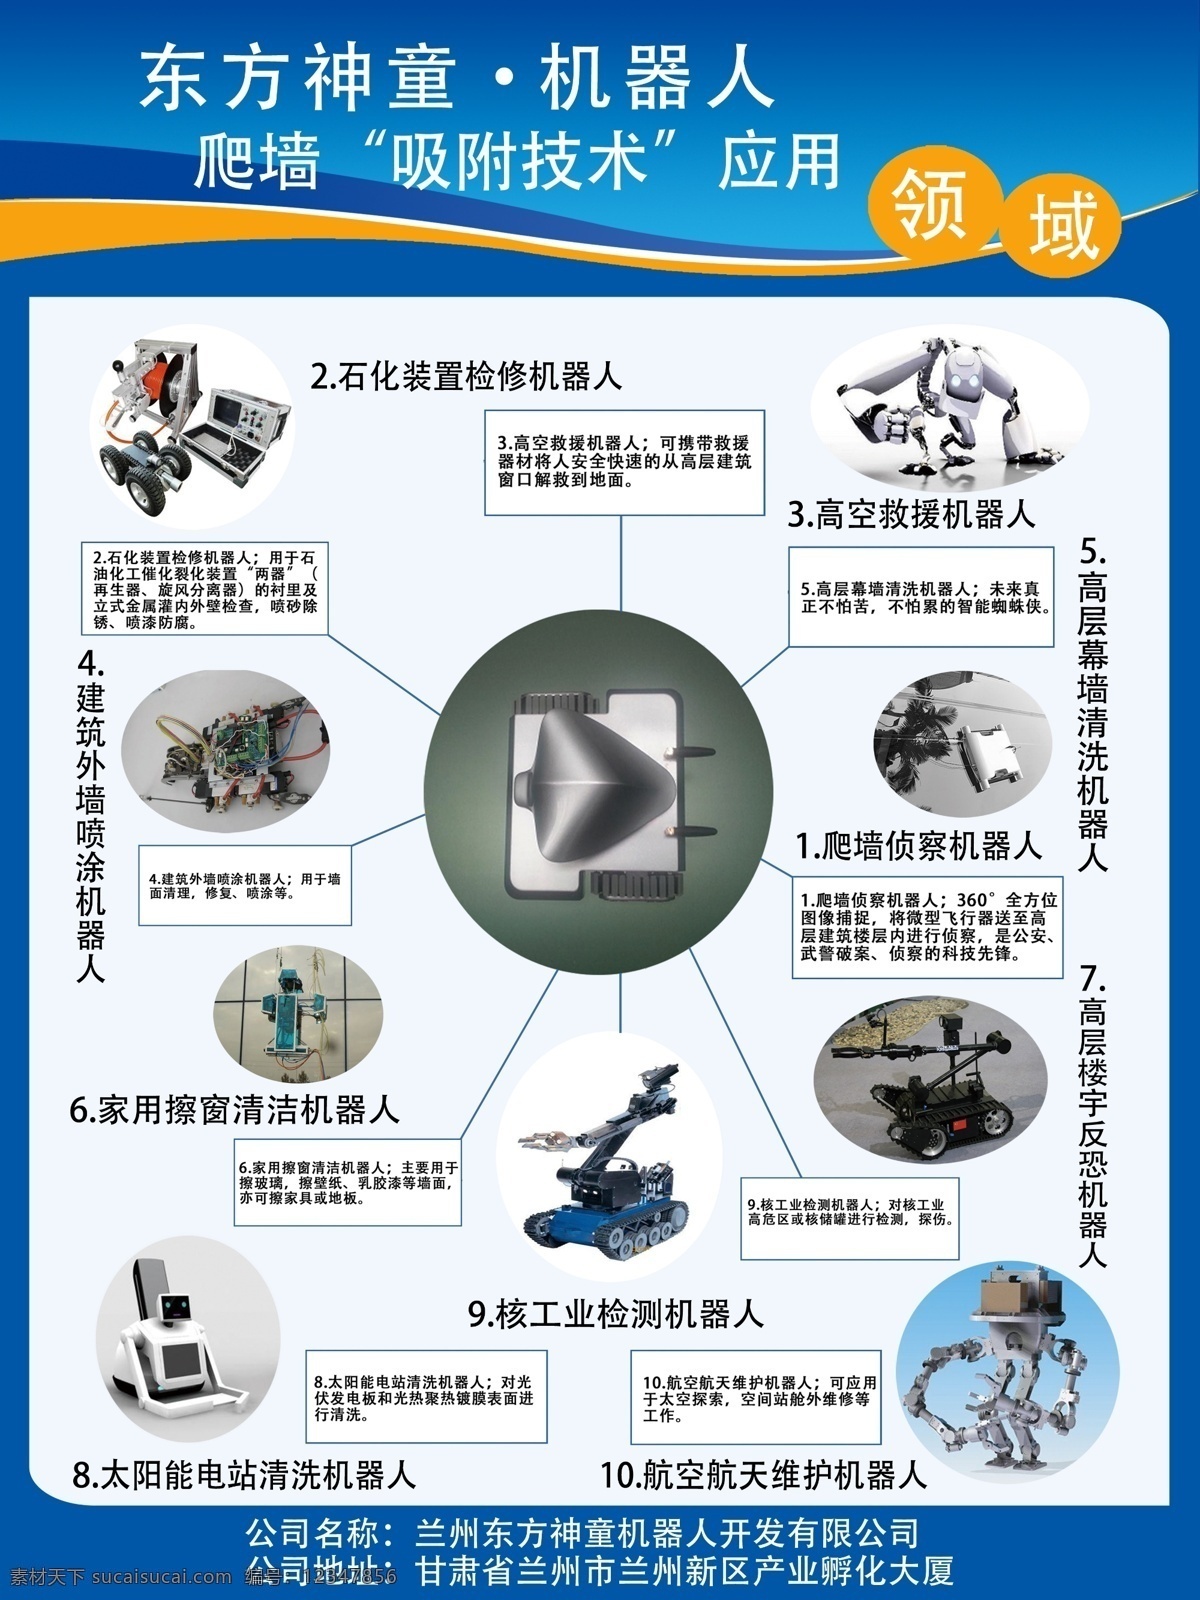 爬墙机器人 东方神童 机器人 蓝色科技 海报 应用领域 吸附技术 白色